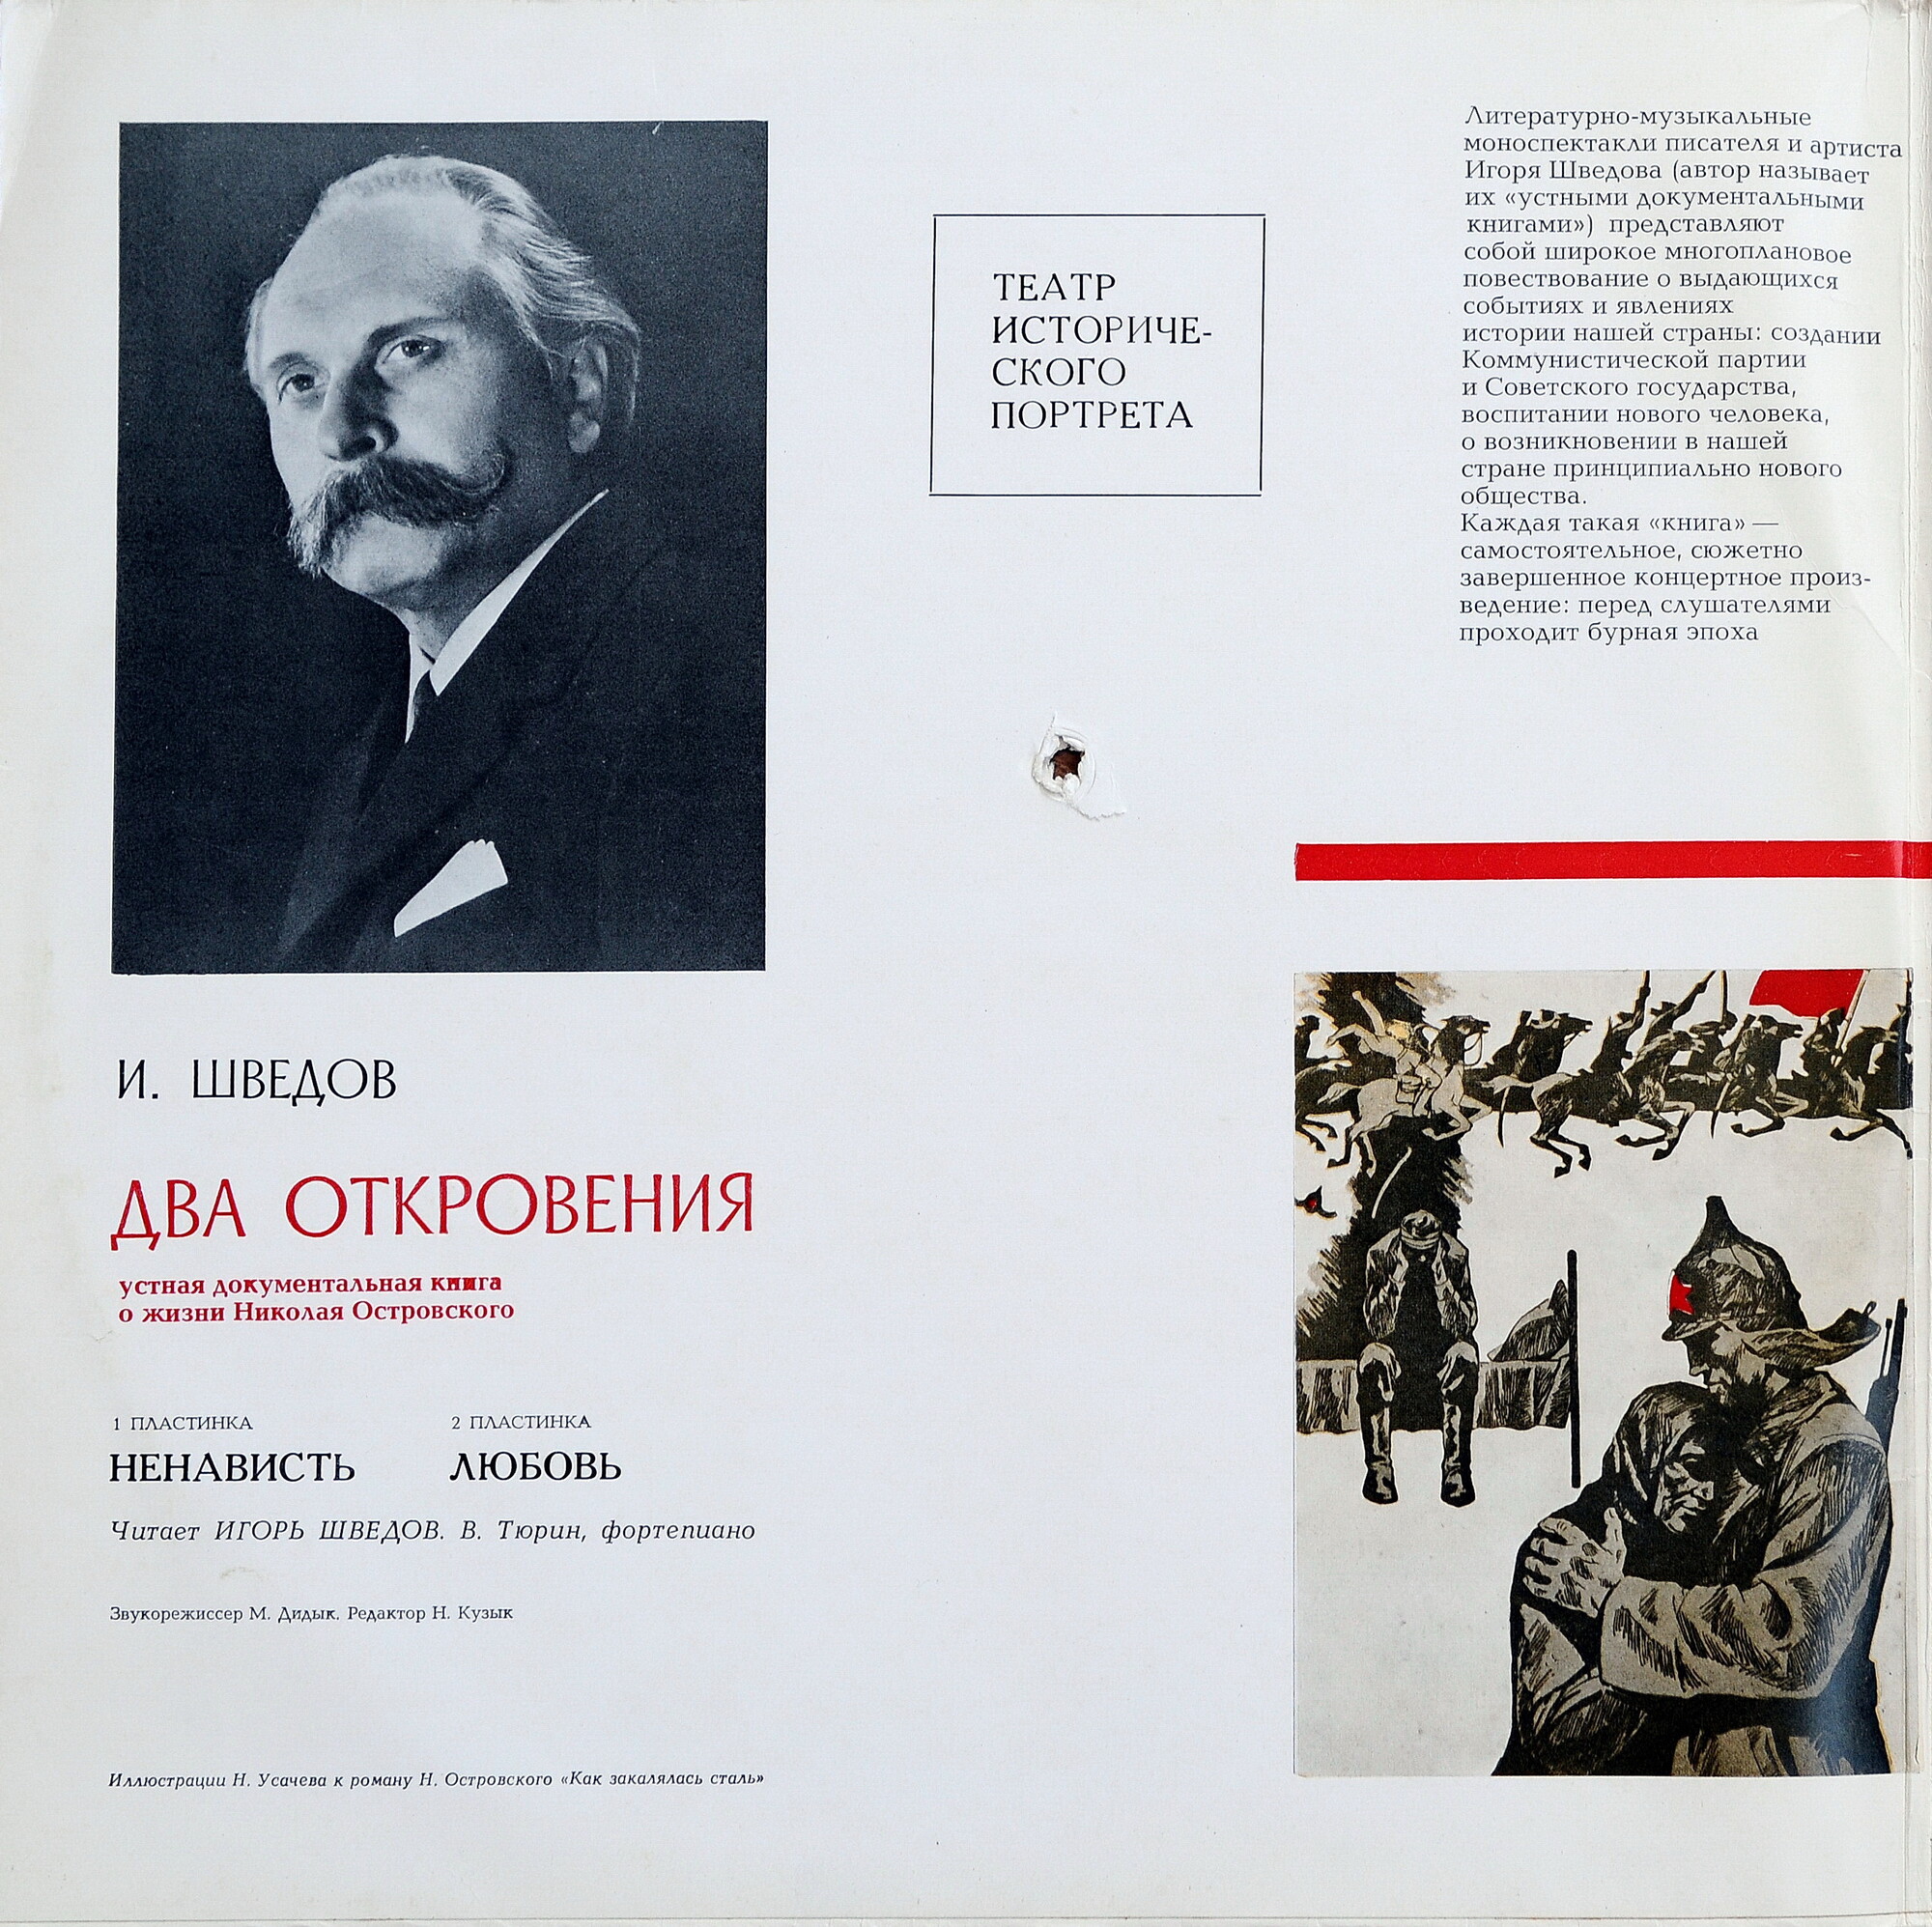 И. ШВЕДОВ (1924). Два откровения